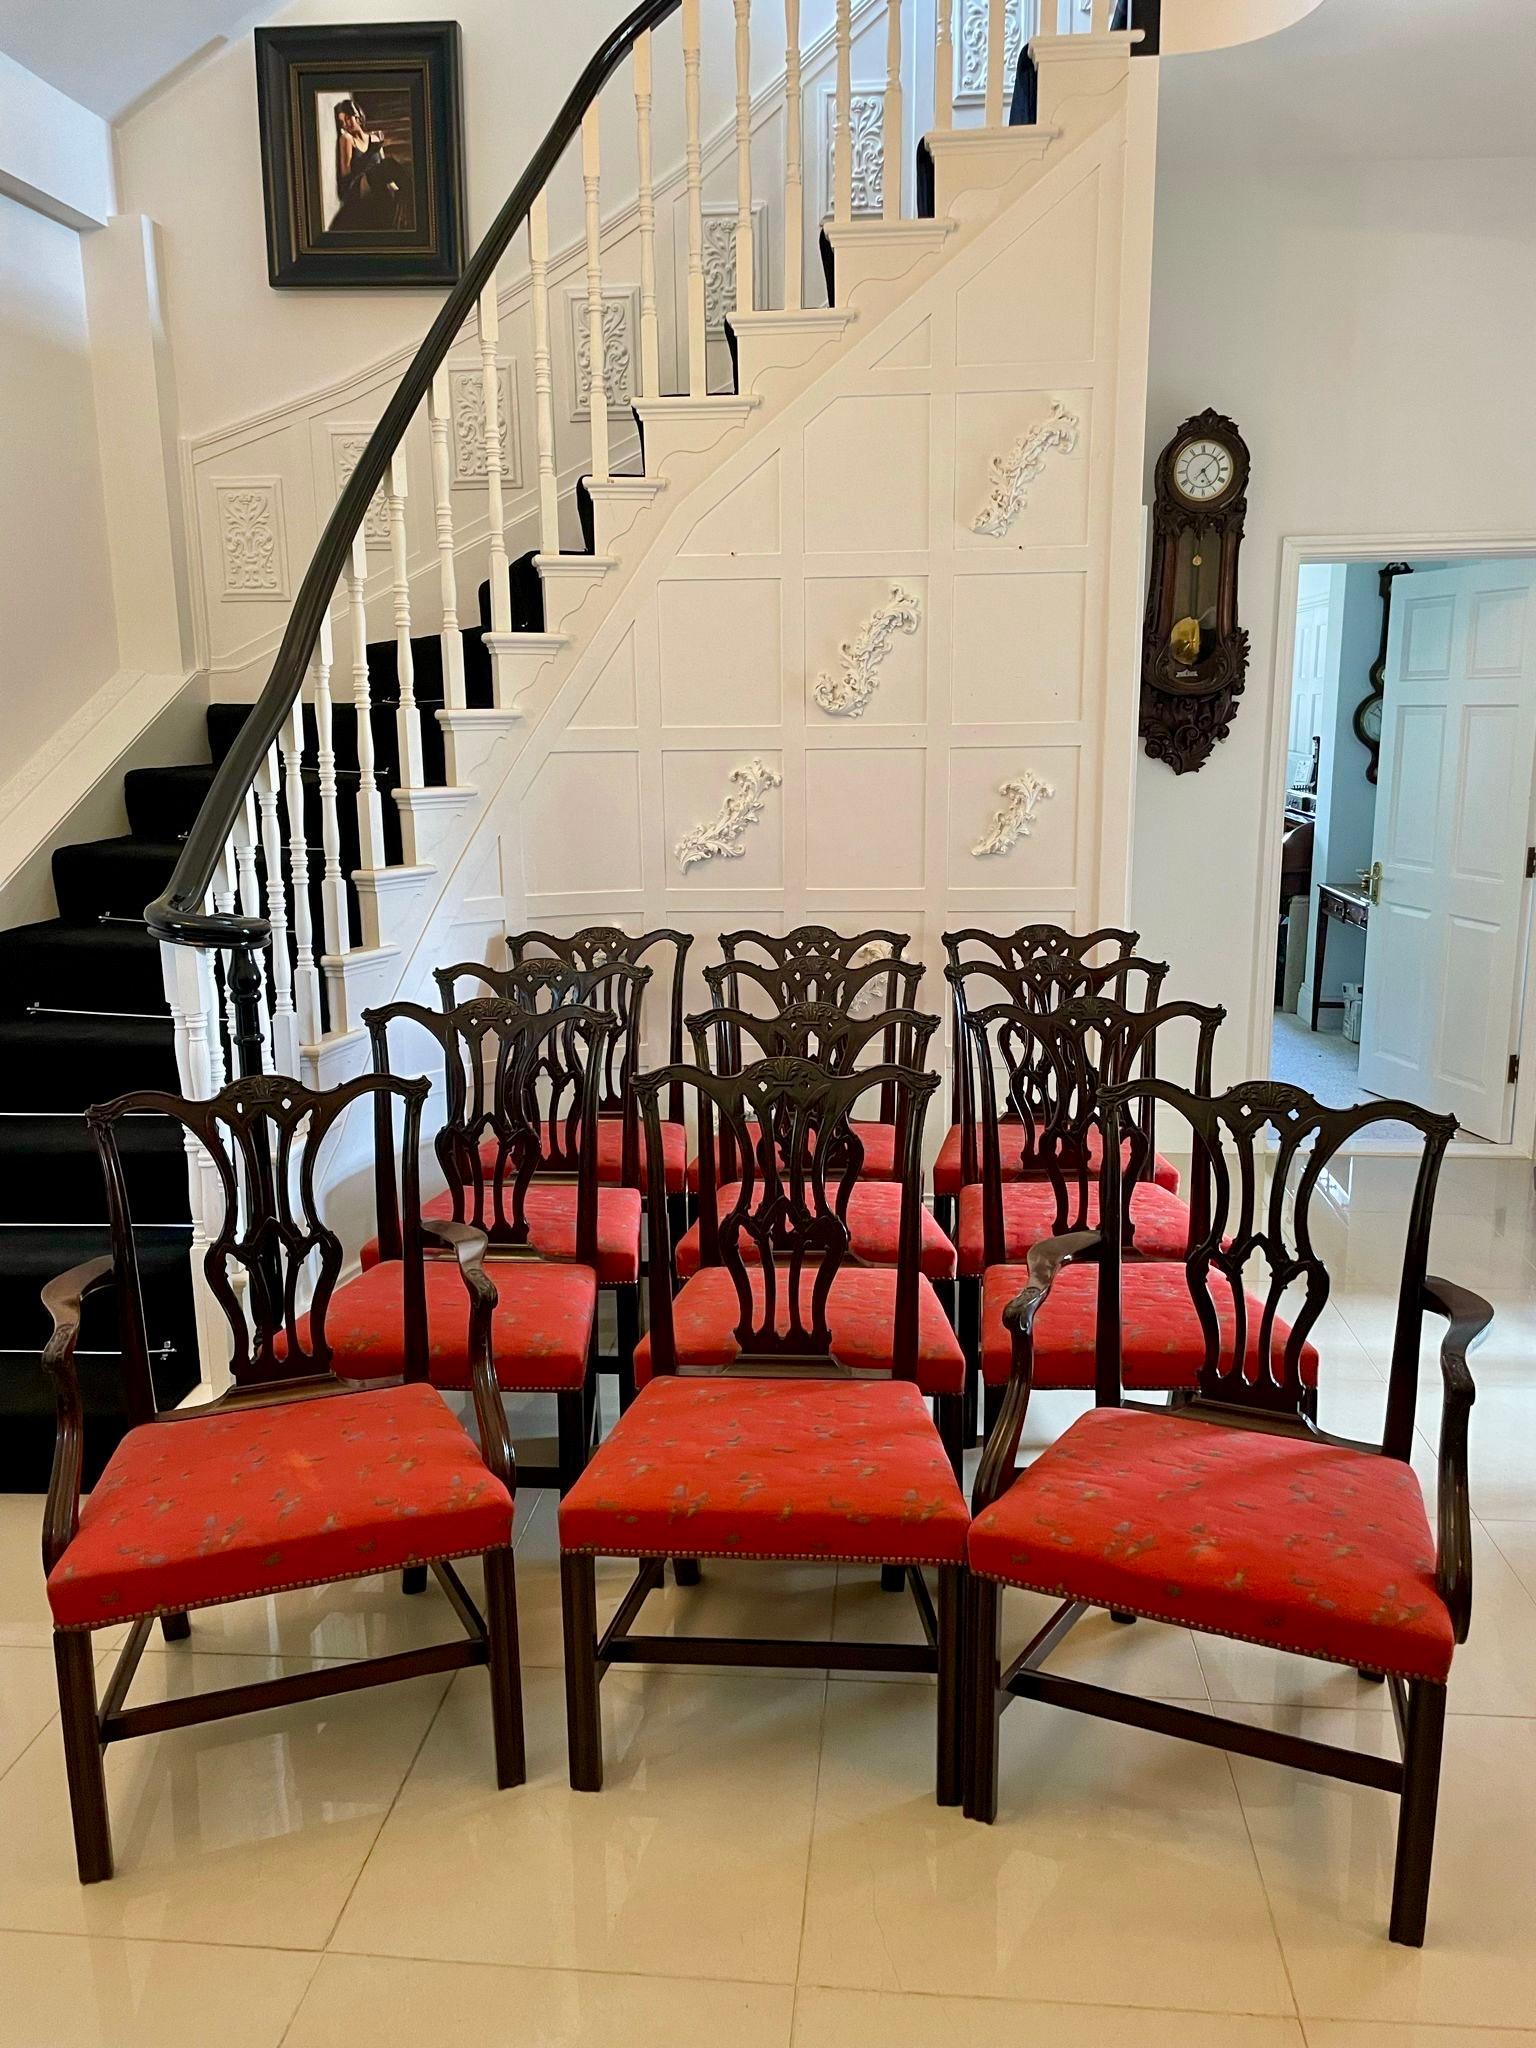 Set aus 12 antiken, geschnitzten Mahagoni-Esszimmerstühlen in viktorianischer Qualität, bestehend aus zwei Ellbogenstühlen und zehn Beistellstühlen. Die Ellbogenstühle haben geformte, offene, geschnitzte Armlehnen, die von geriffelten Stützen